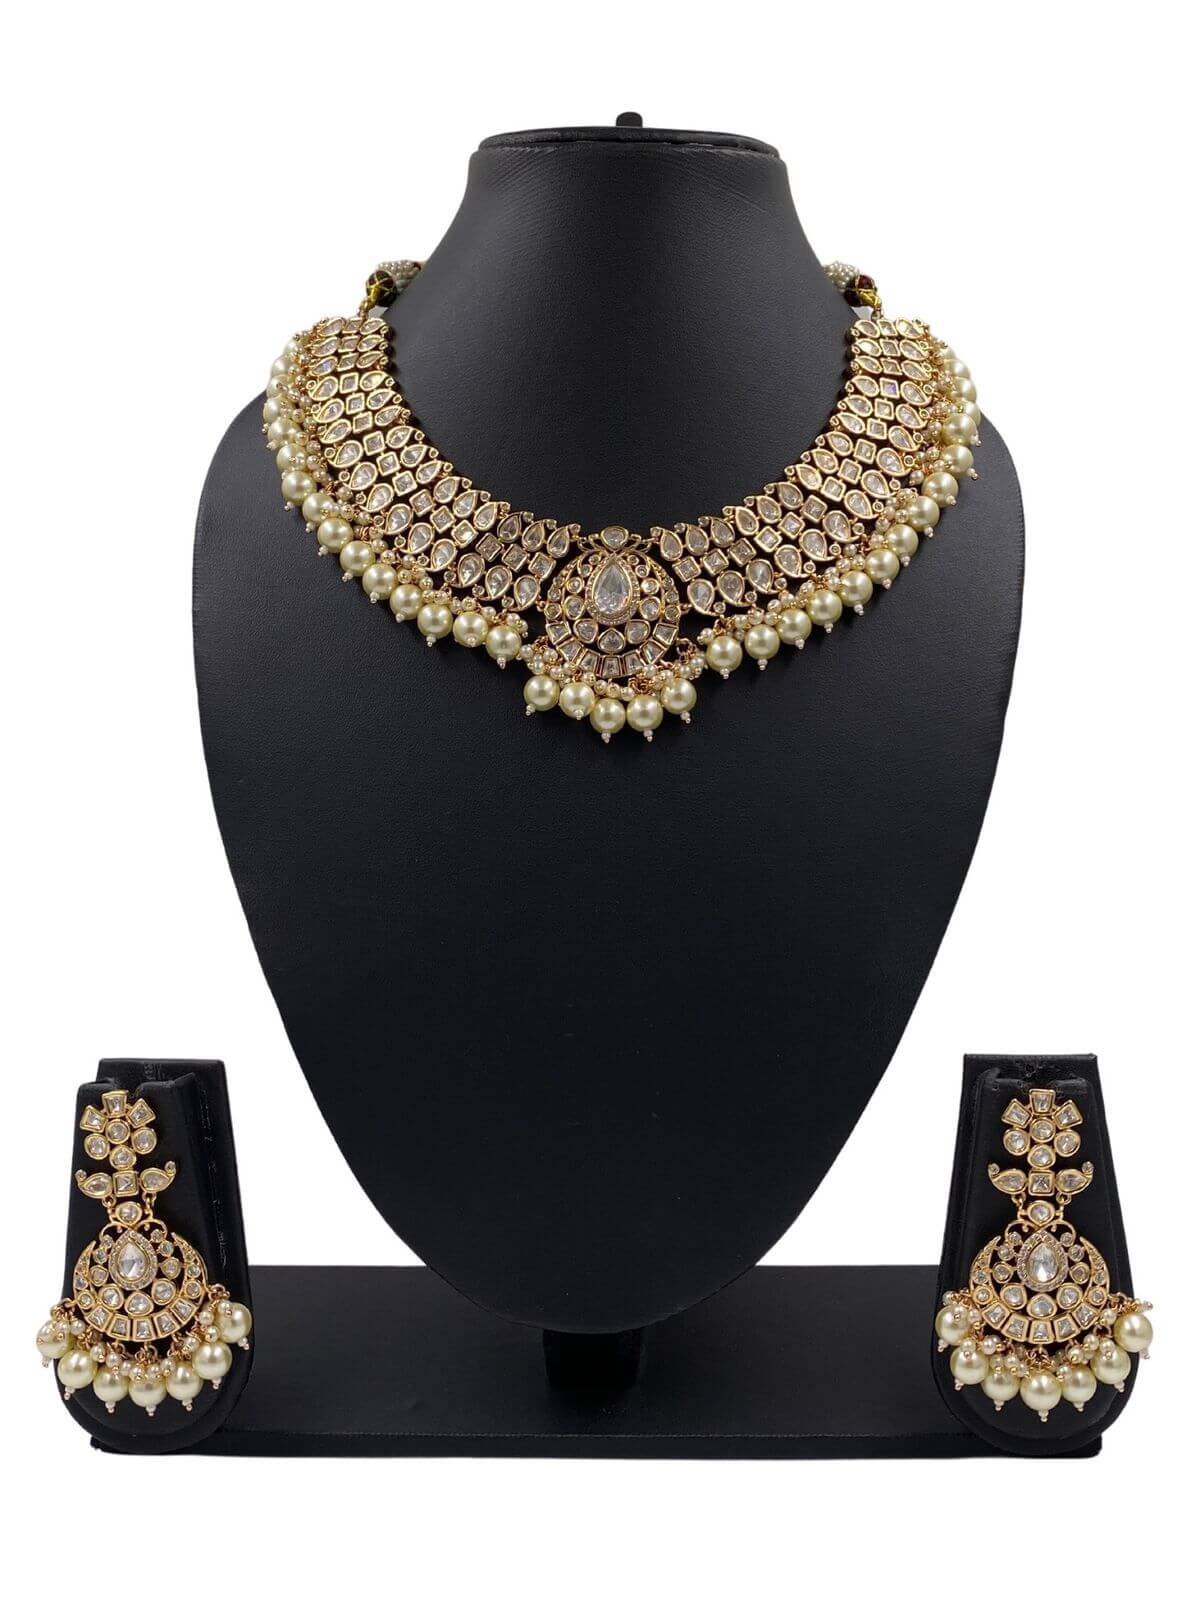 Nayantara Unique Wedding Polki Jewellery Necklace Set By Gehna Shop